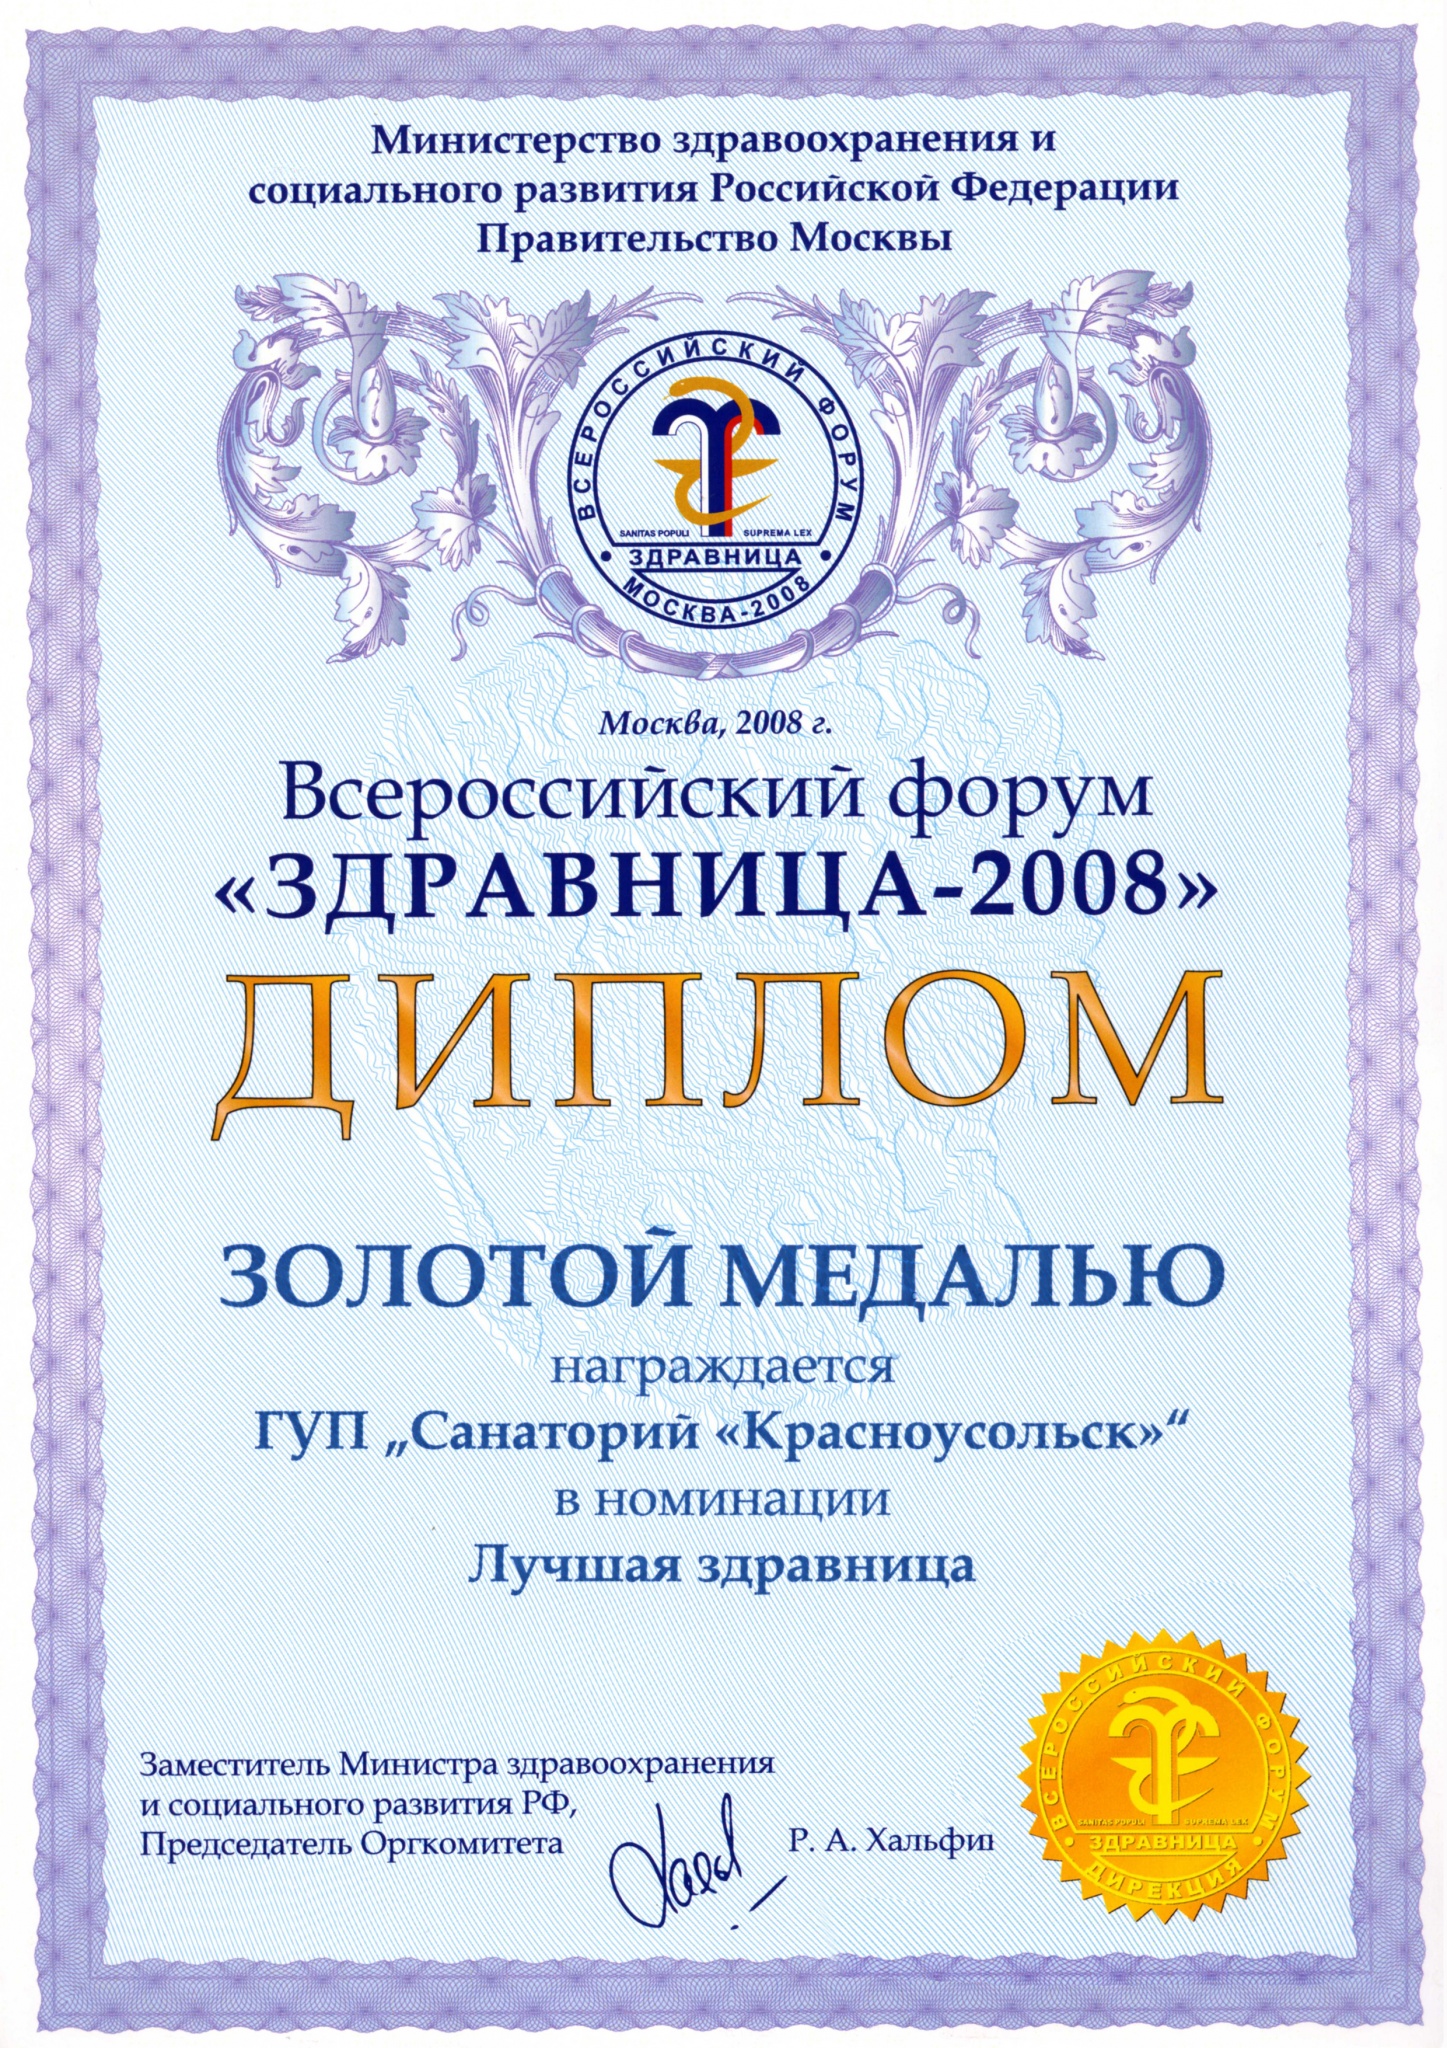 2008 Лучшая здравница 2008 (1).jpg